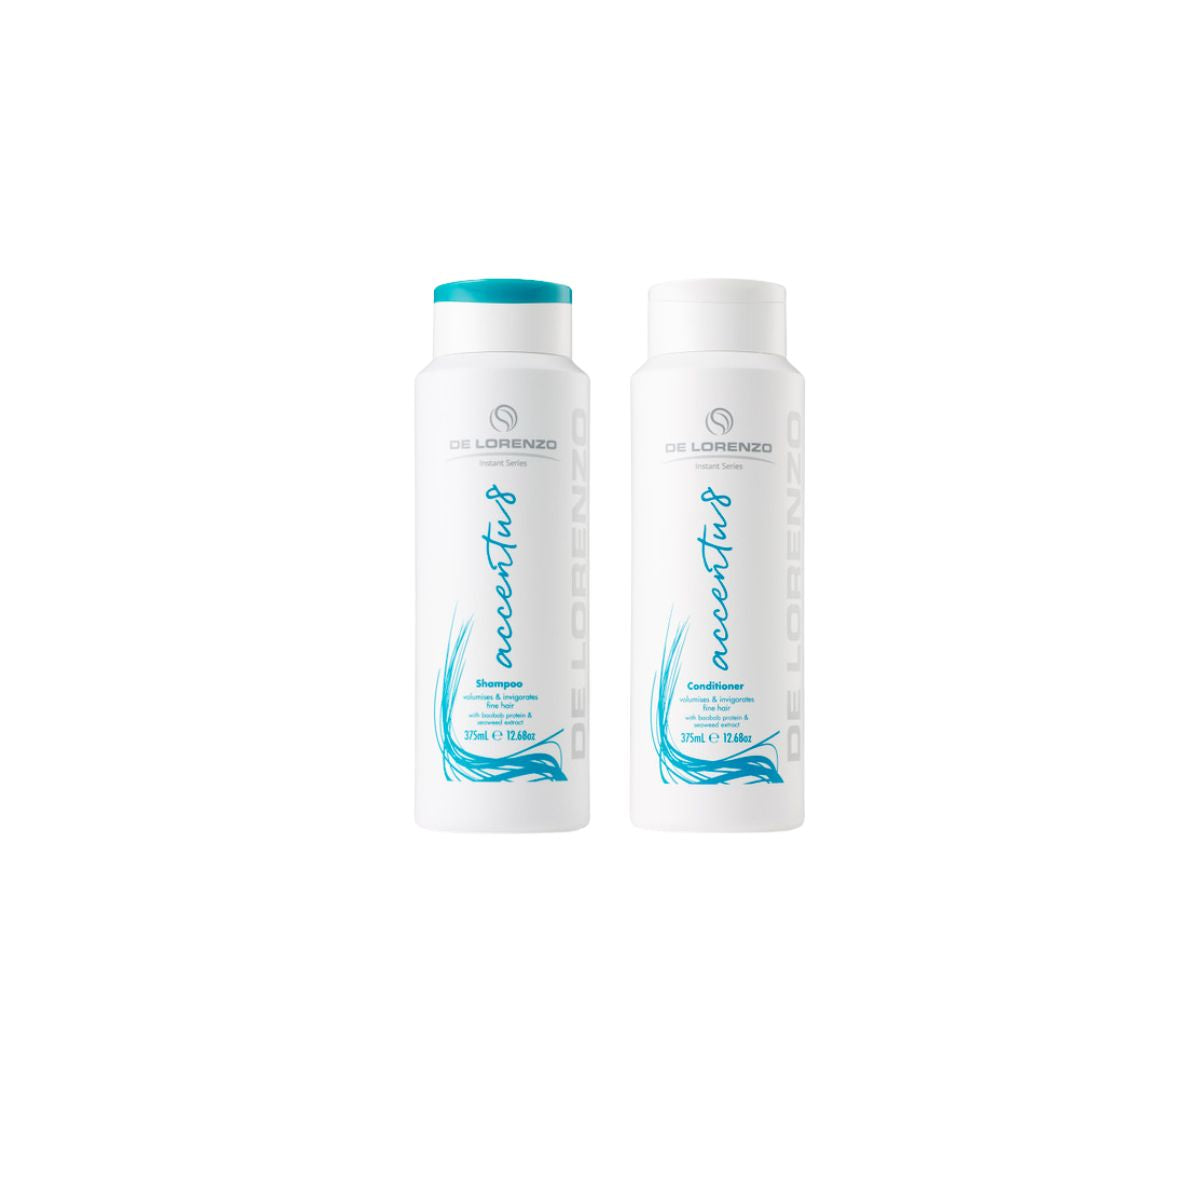 De Lorenzo Instant Accentu8 Shampoo & Conditioner Duo 375ml - Salon Warehouse